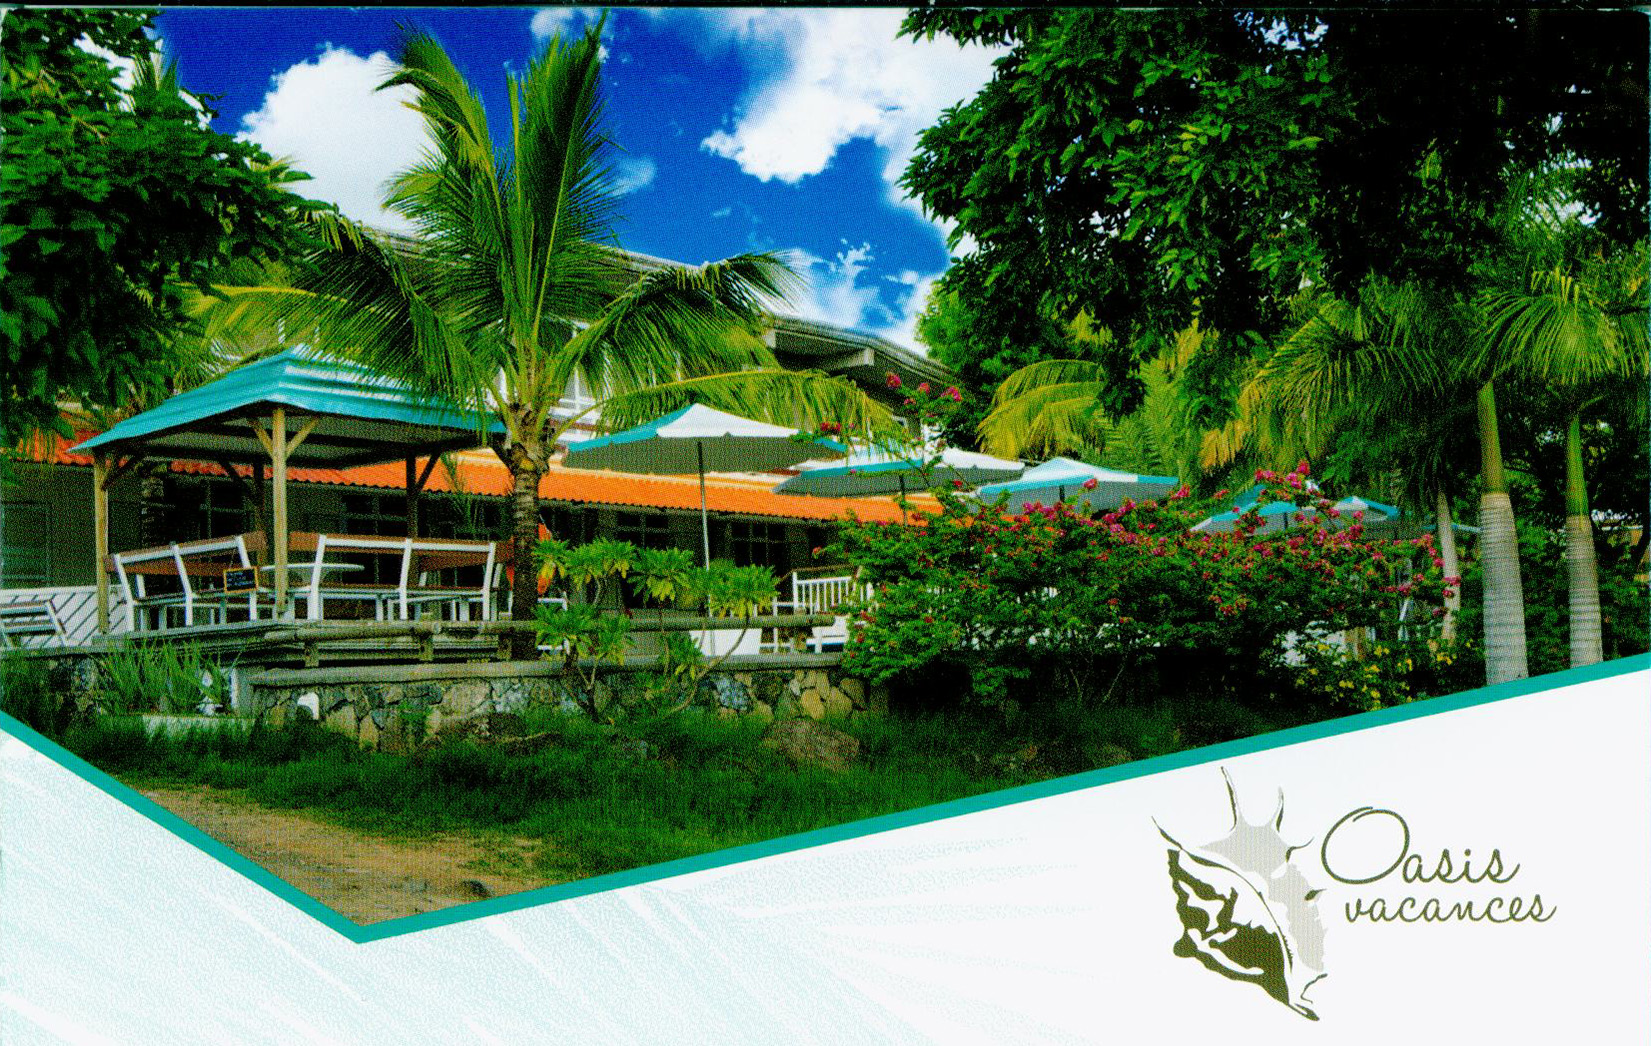 Coco Villa de Oasis Vacances a été réaménagé et vous attend pour un séjour inoubliable